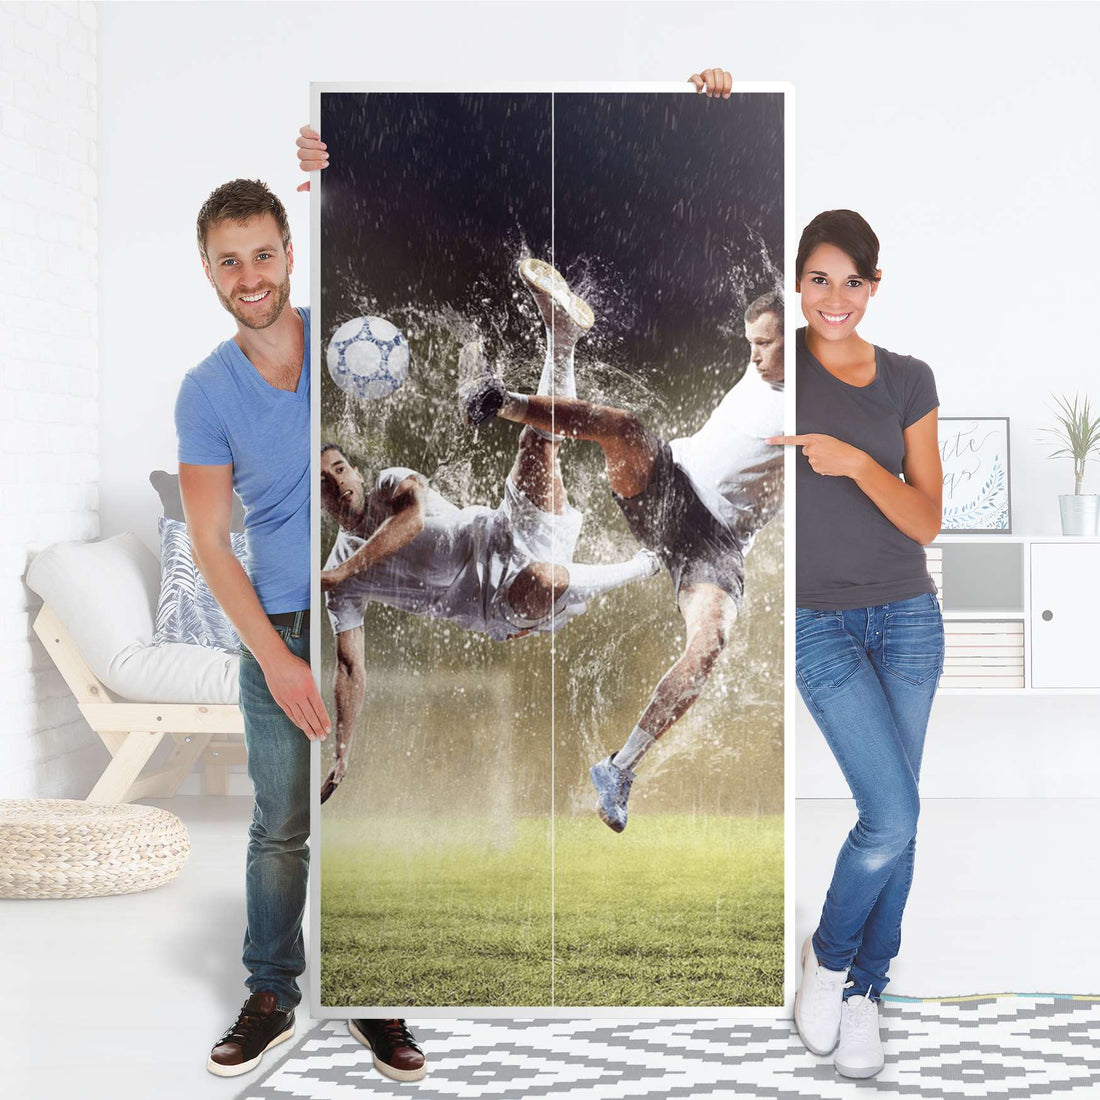 Klebefolie für Möbel Soccer - IKEA Pax Schrank 201 cm Höhe - 2 Türen - Folie